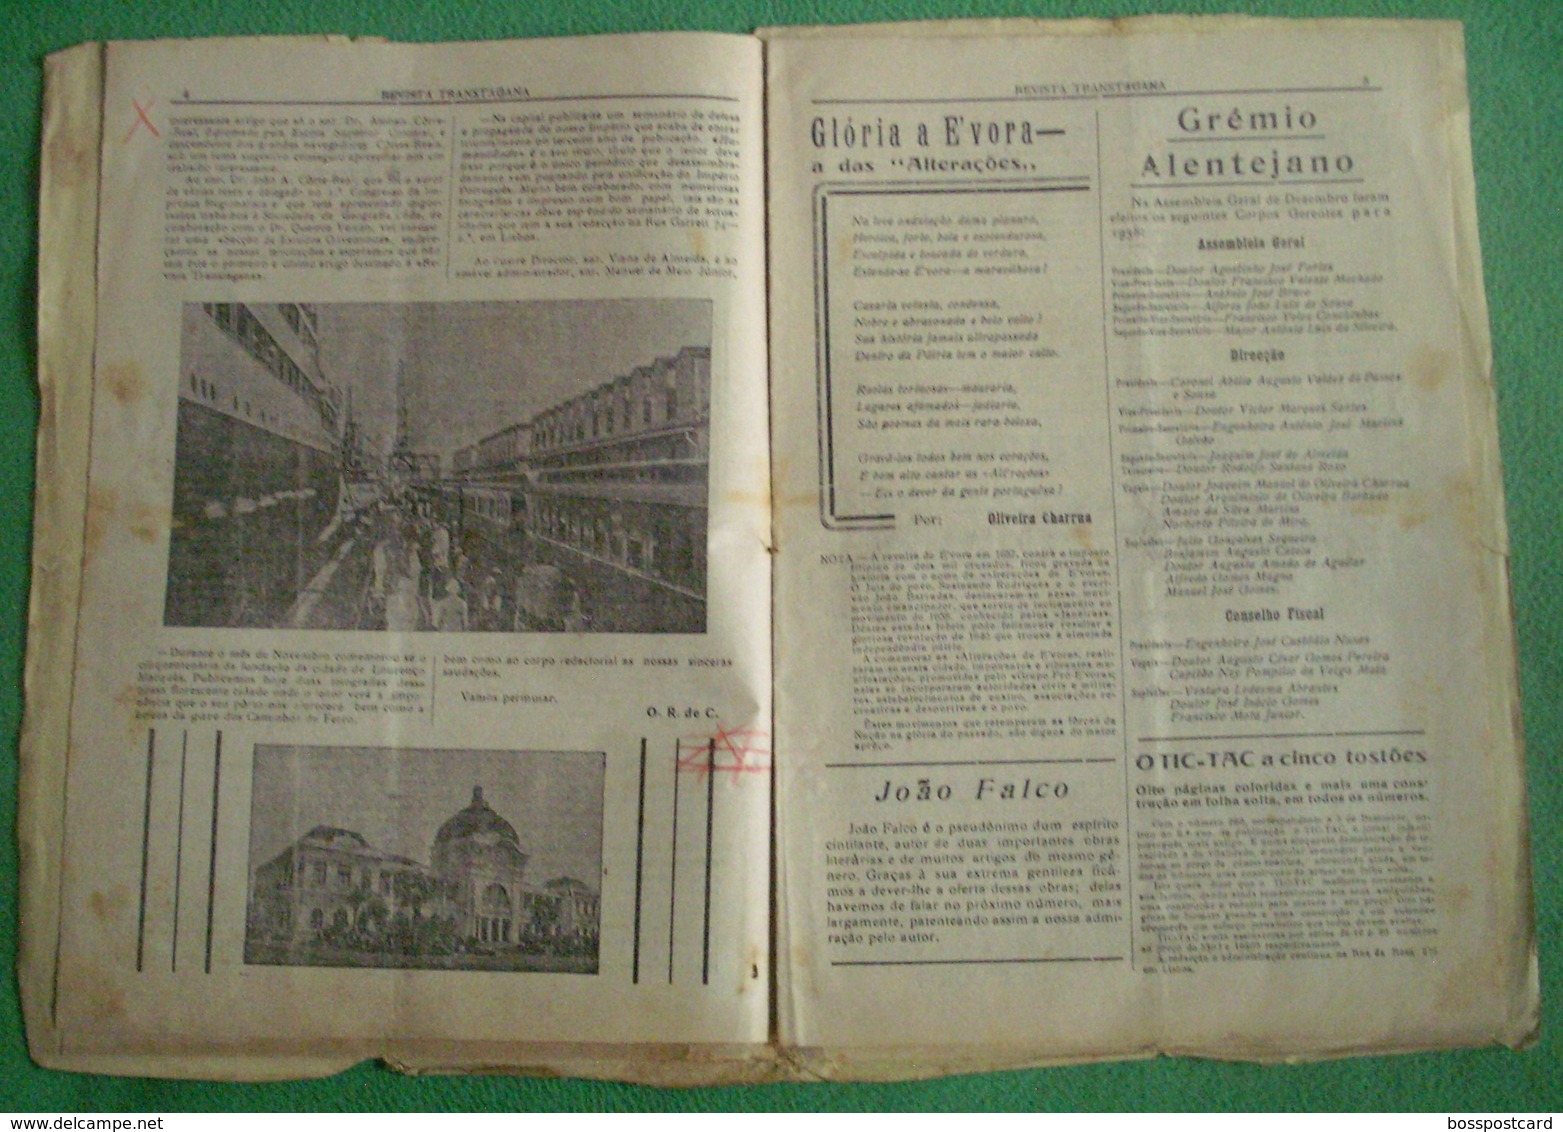 Évora - "Revista Transtagana" Nº 46 De 1938 - Jornal - Imprensa - Publicidade - Informations Générales